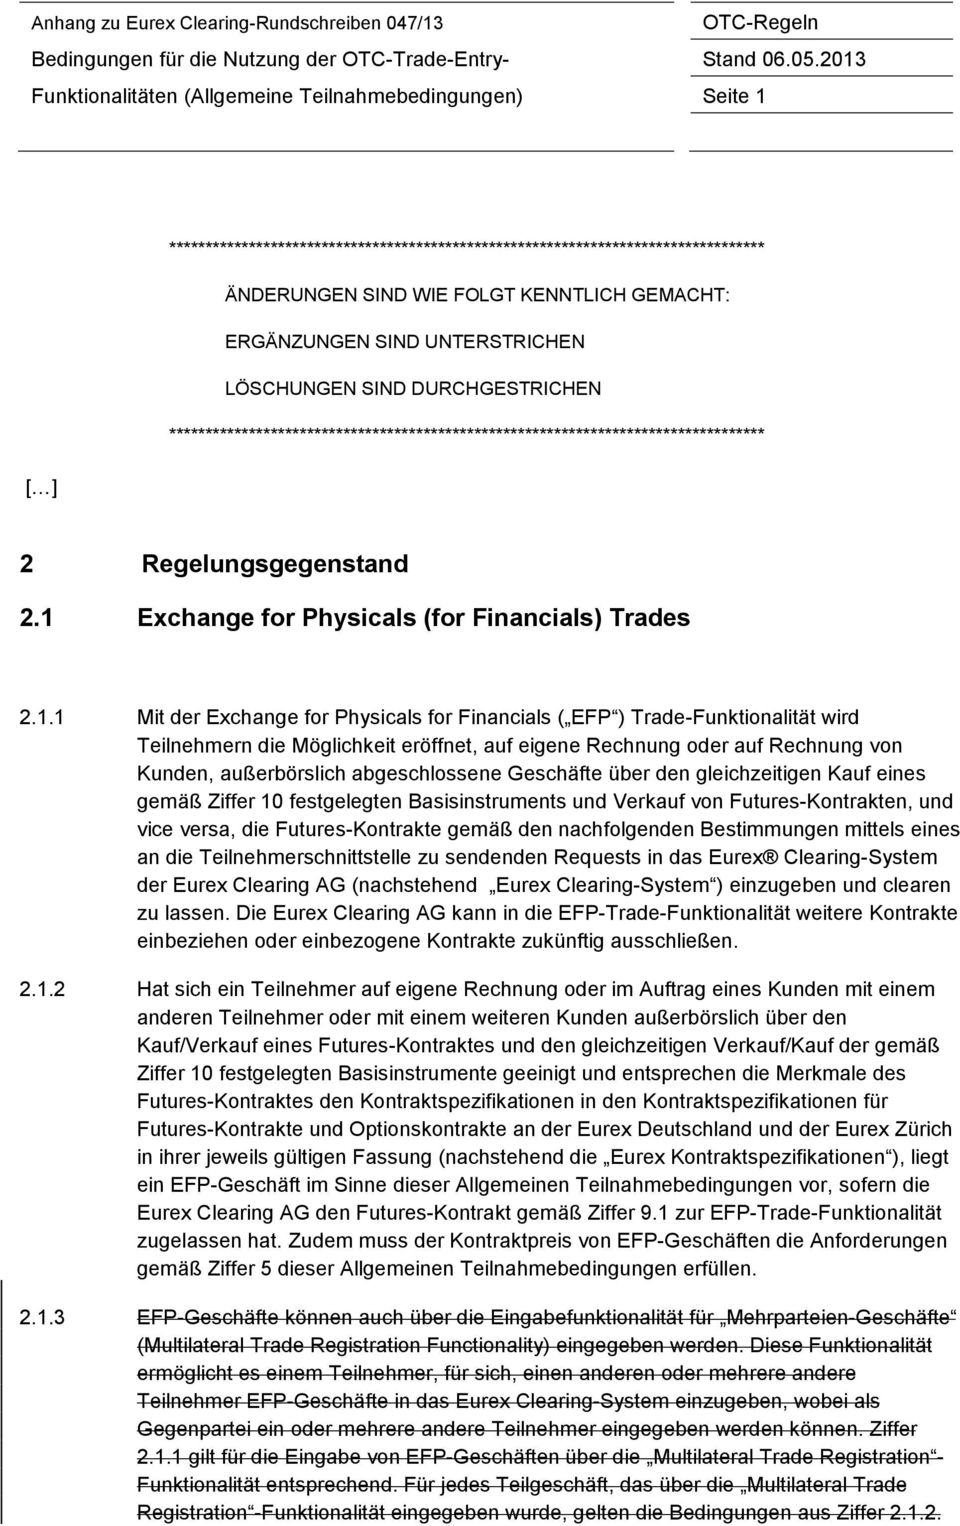 1 Exchange for Physicals (for Financials) Trades 2.1.1 Mit der Exchange for Physicals for Financials ( EFP ) Trade-Funktionalität wird Teilnehmern die Möglichkeit eröffnet, auf eigene Rechnung oder